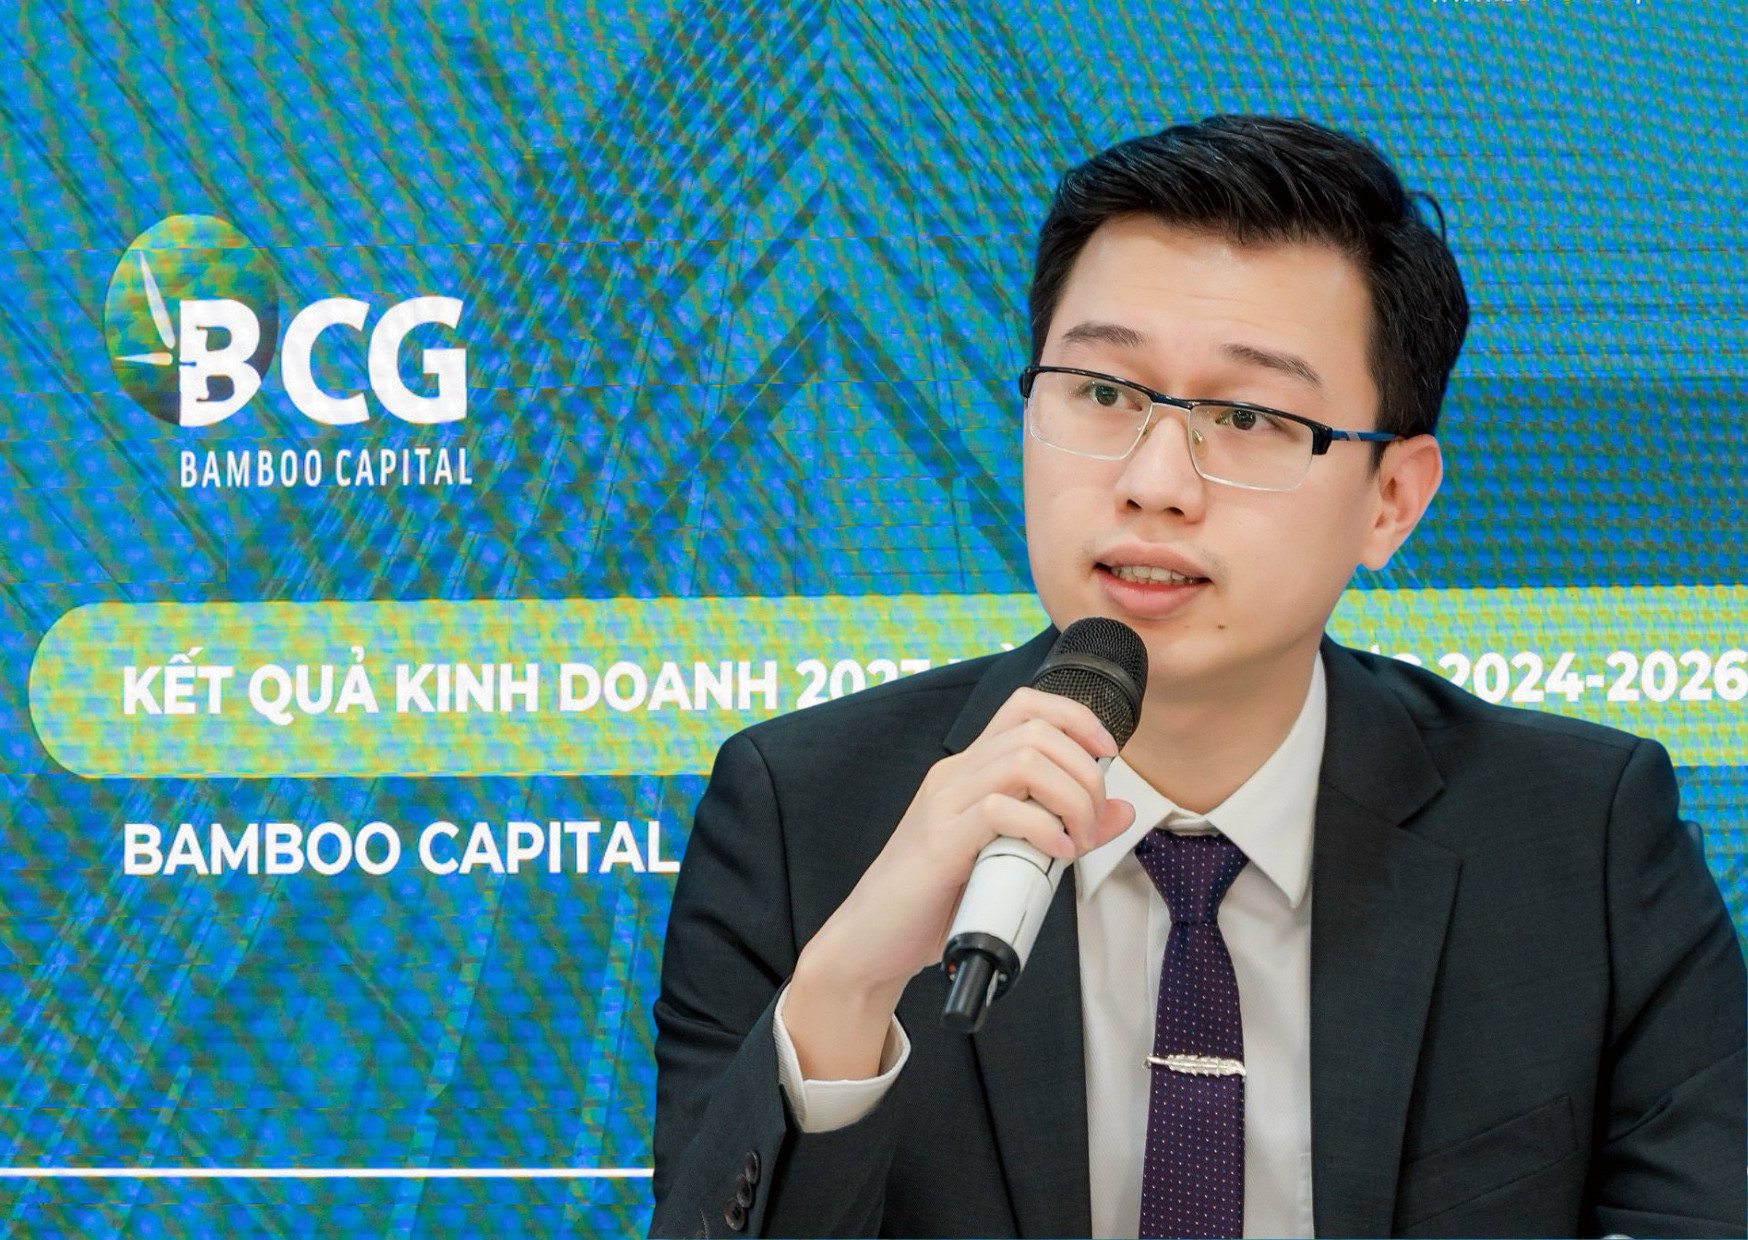 Tập đoàn Bamboo Capital trao quyền cho lãnh đạo trẻ, ông Nguyễn Tùng Lâm được bổ nhiệm làm tân Tổng giám đốc